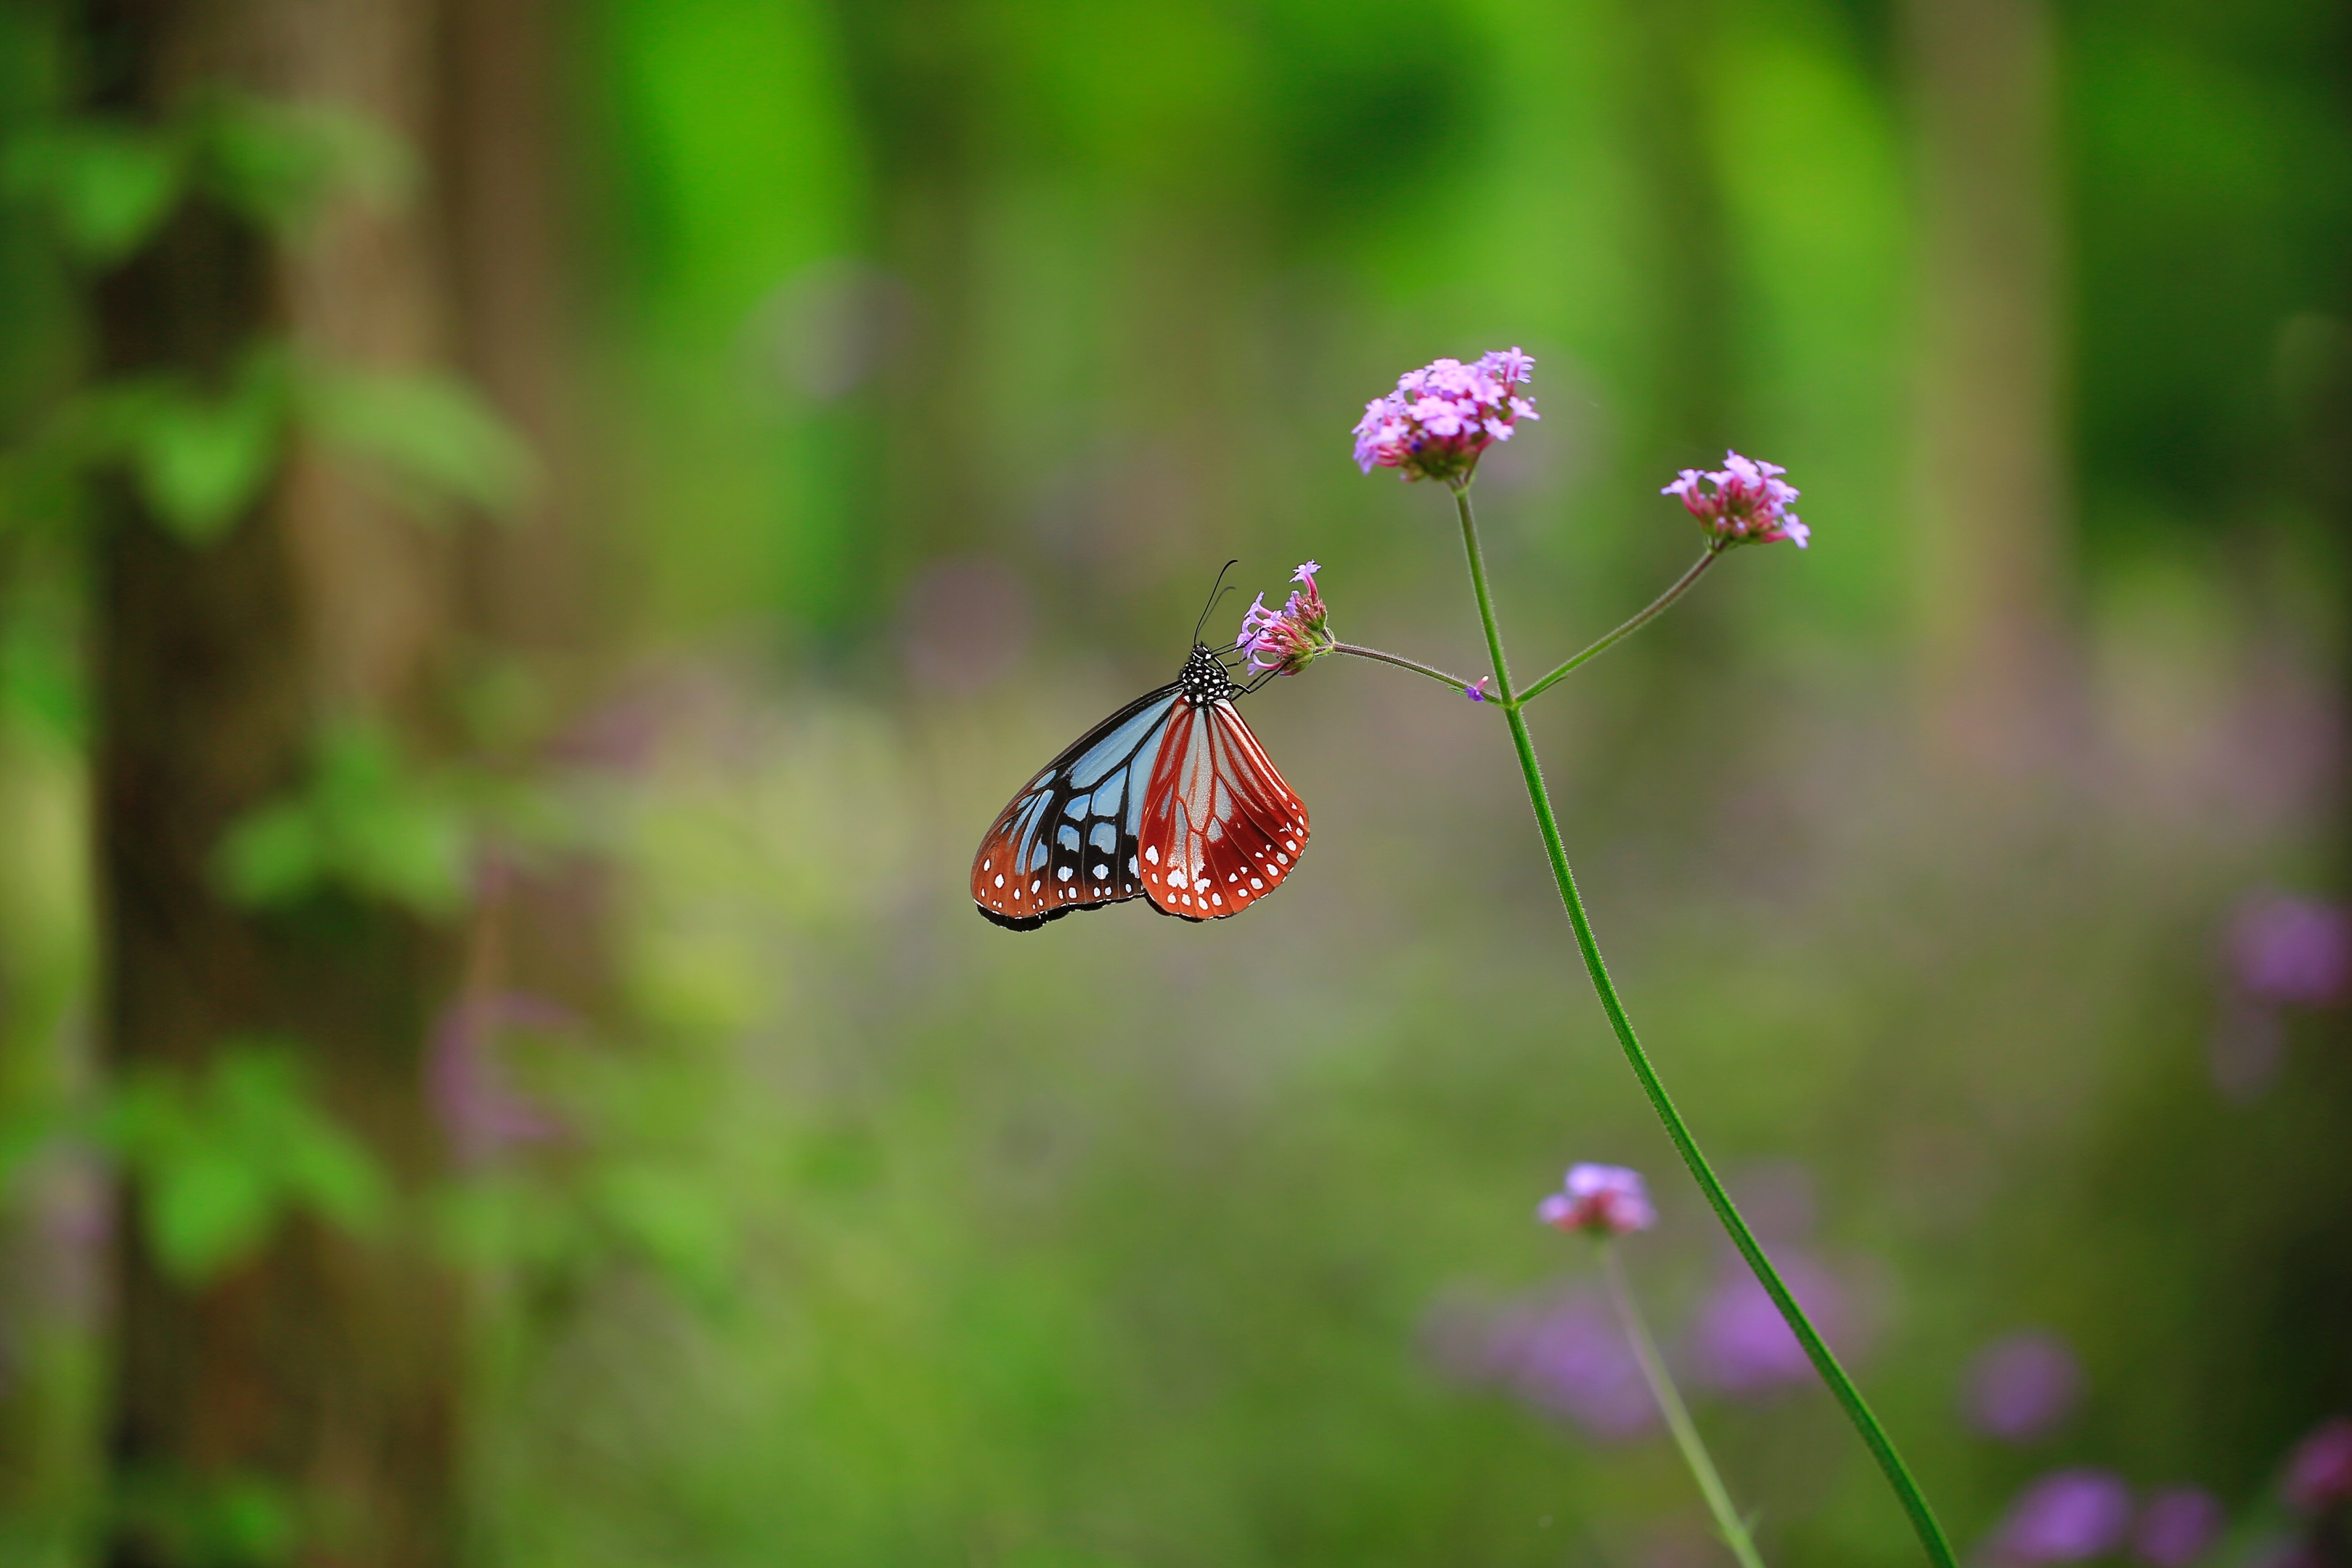 翩翩起舞的蝴蝶与花 - 免费可商用图片 - cc0.cn